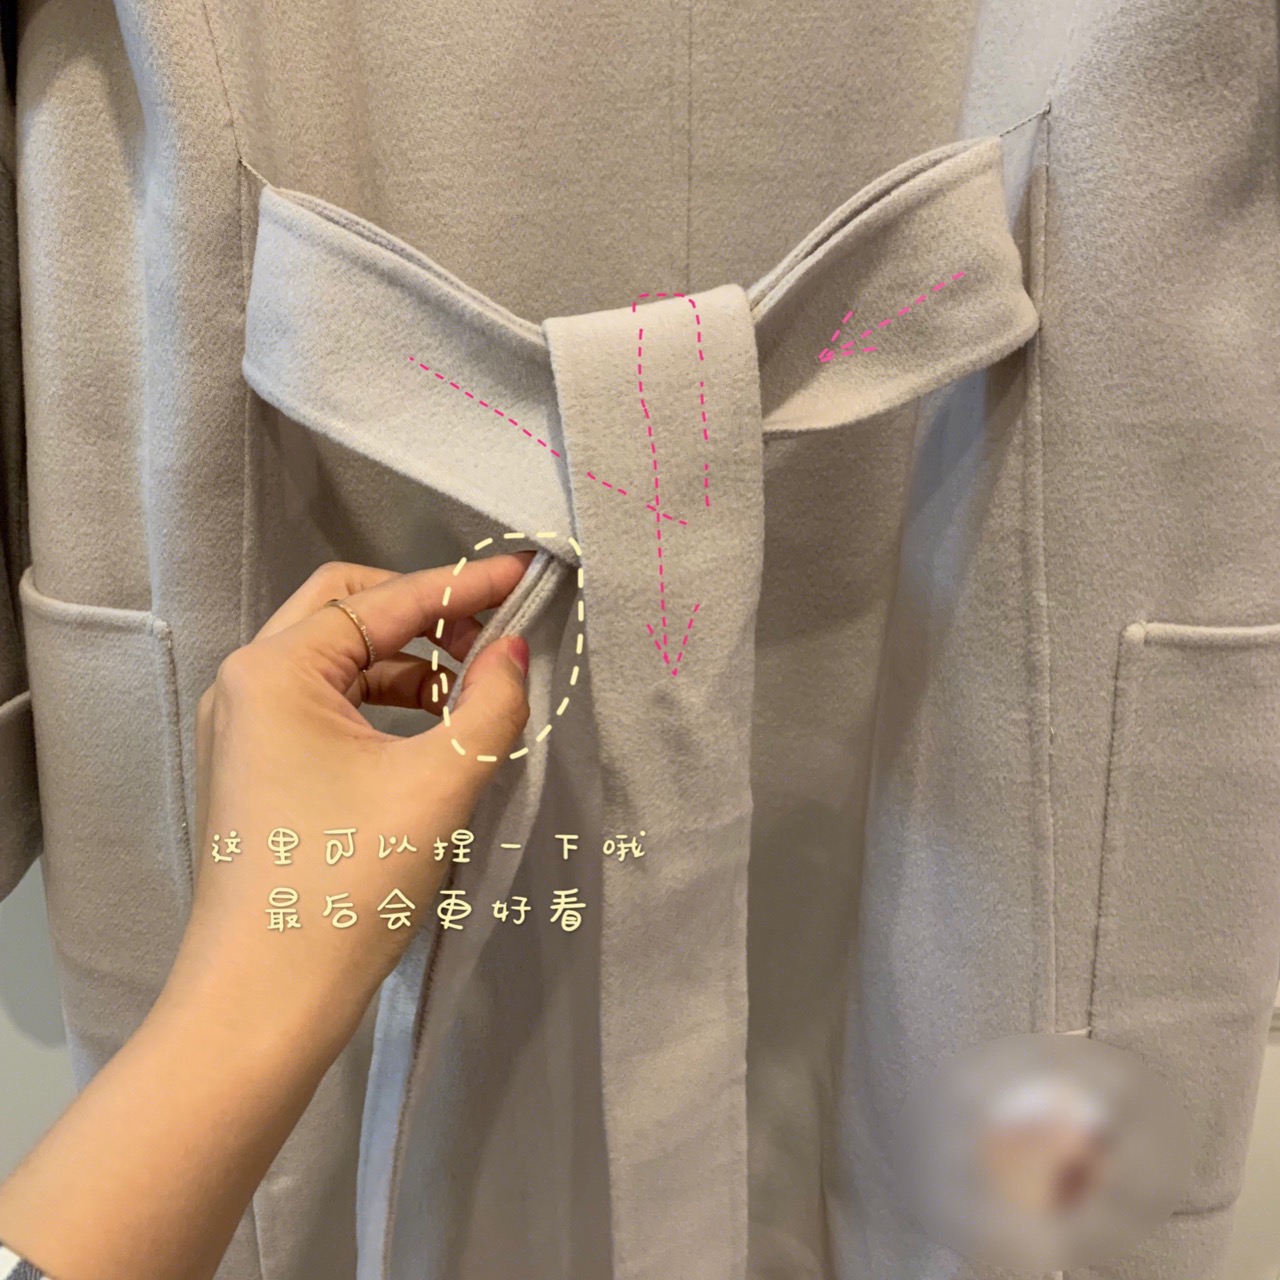 图解教你最好看最简单的大衣蝴蝶结打结方式!